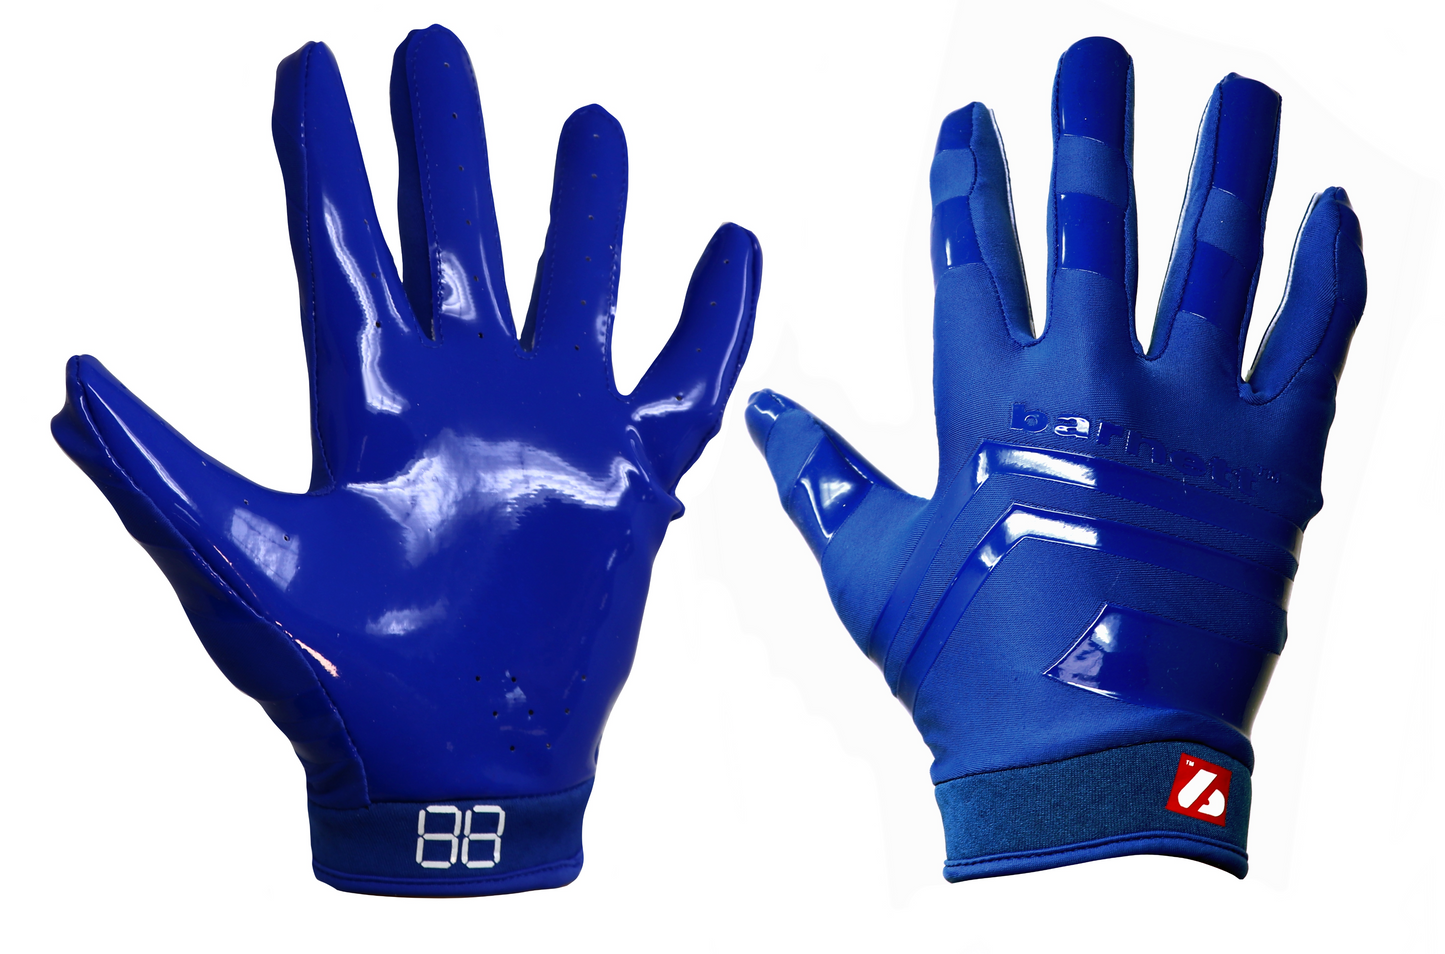 FRG-03 Les meilleurs gants de football receveur, Bleu